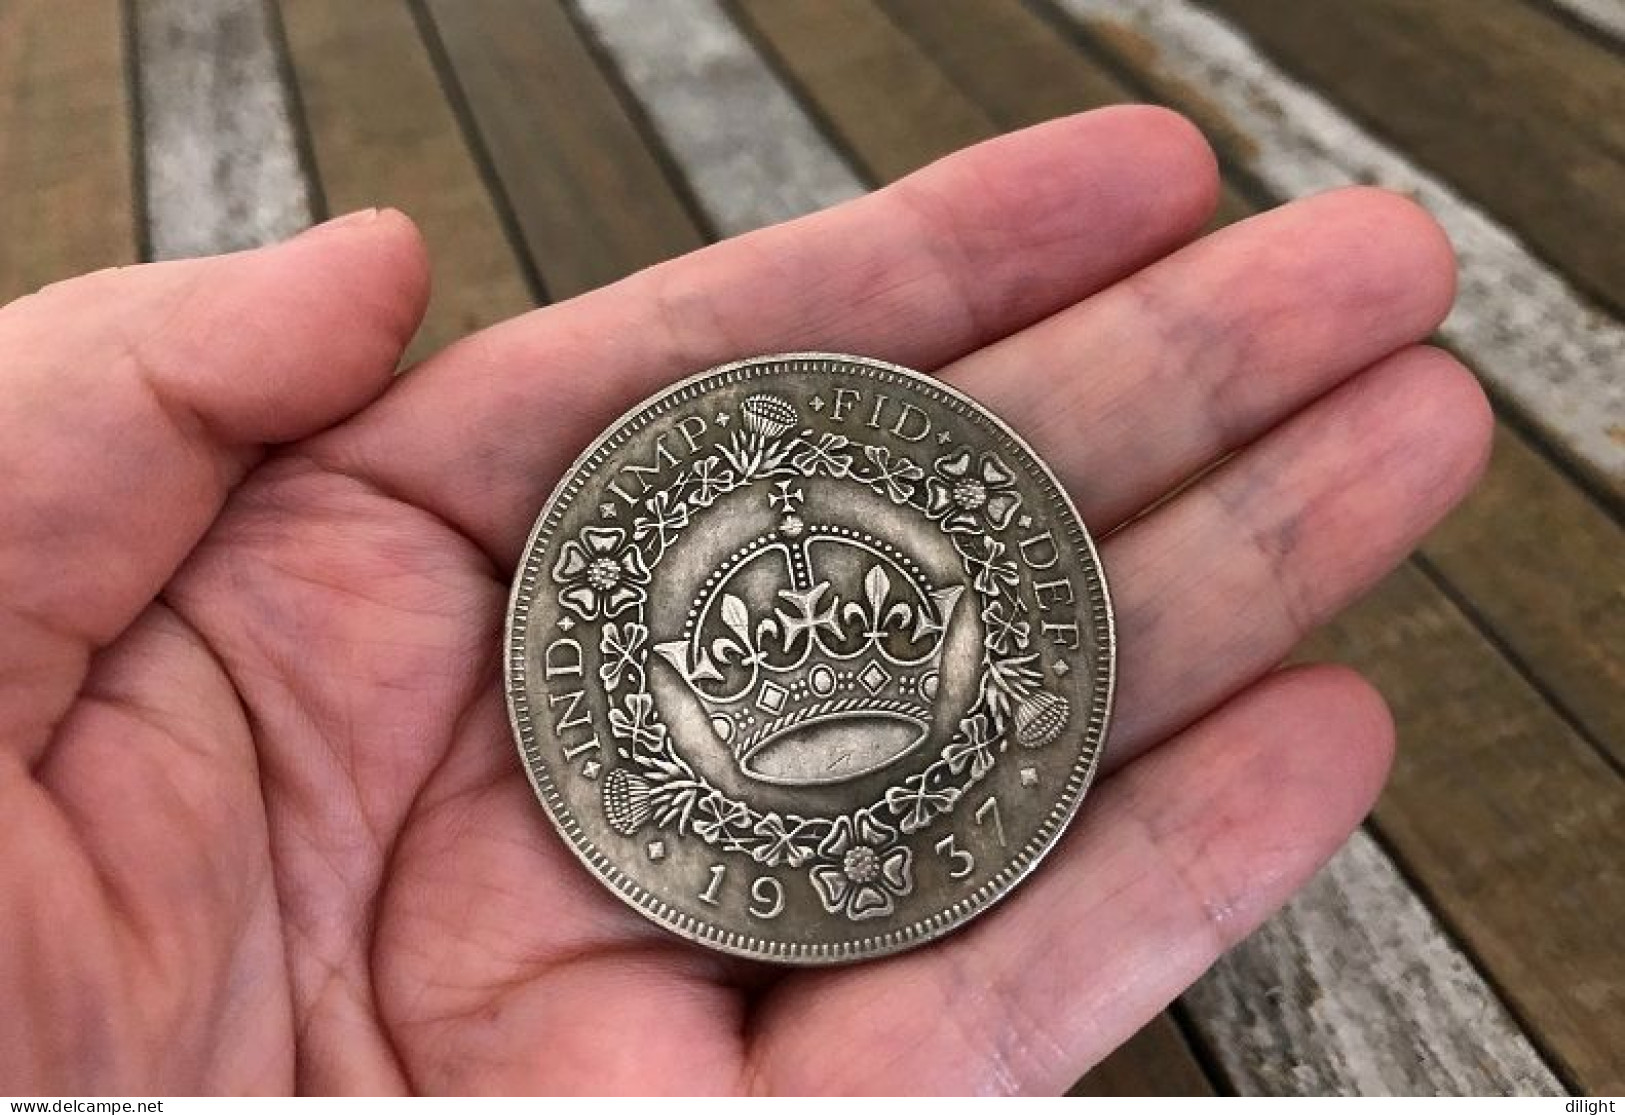 Coin 1937 King Edward VIII Of England (Wallis Simpson) =replica= FREE SHIPPING - Buitenlandse Handel, Proeven, Tweede Merken